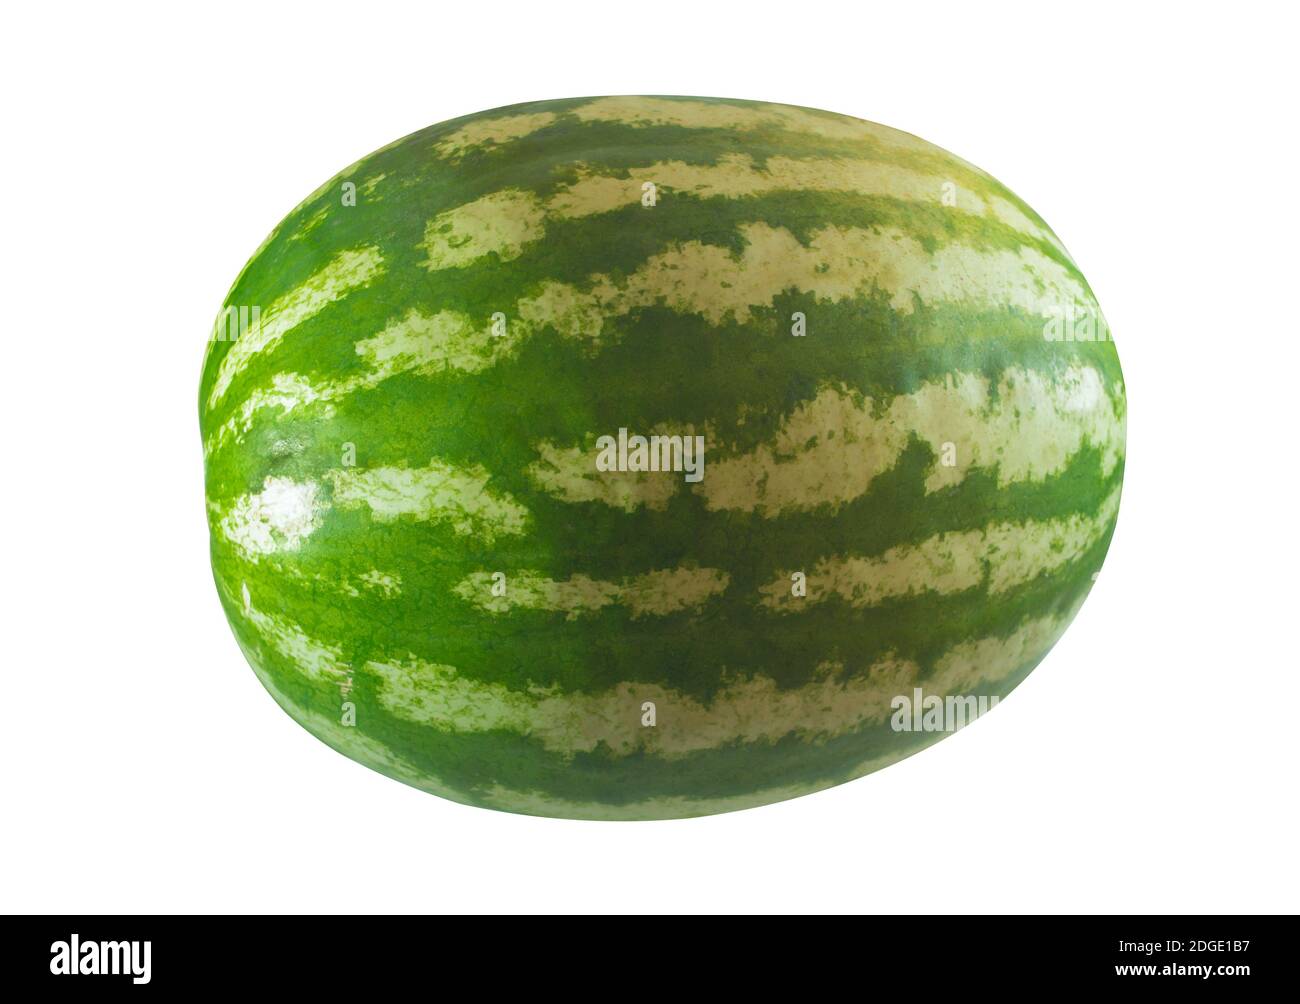 Large watermelon whole fruit on white background, seasonal fruit symbol of autumn, sweet lunch snack Stock Photo